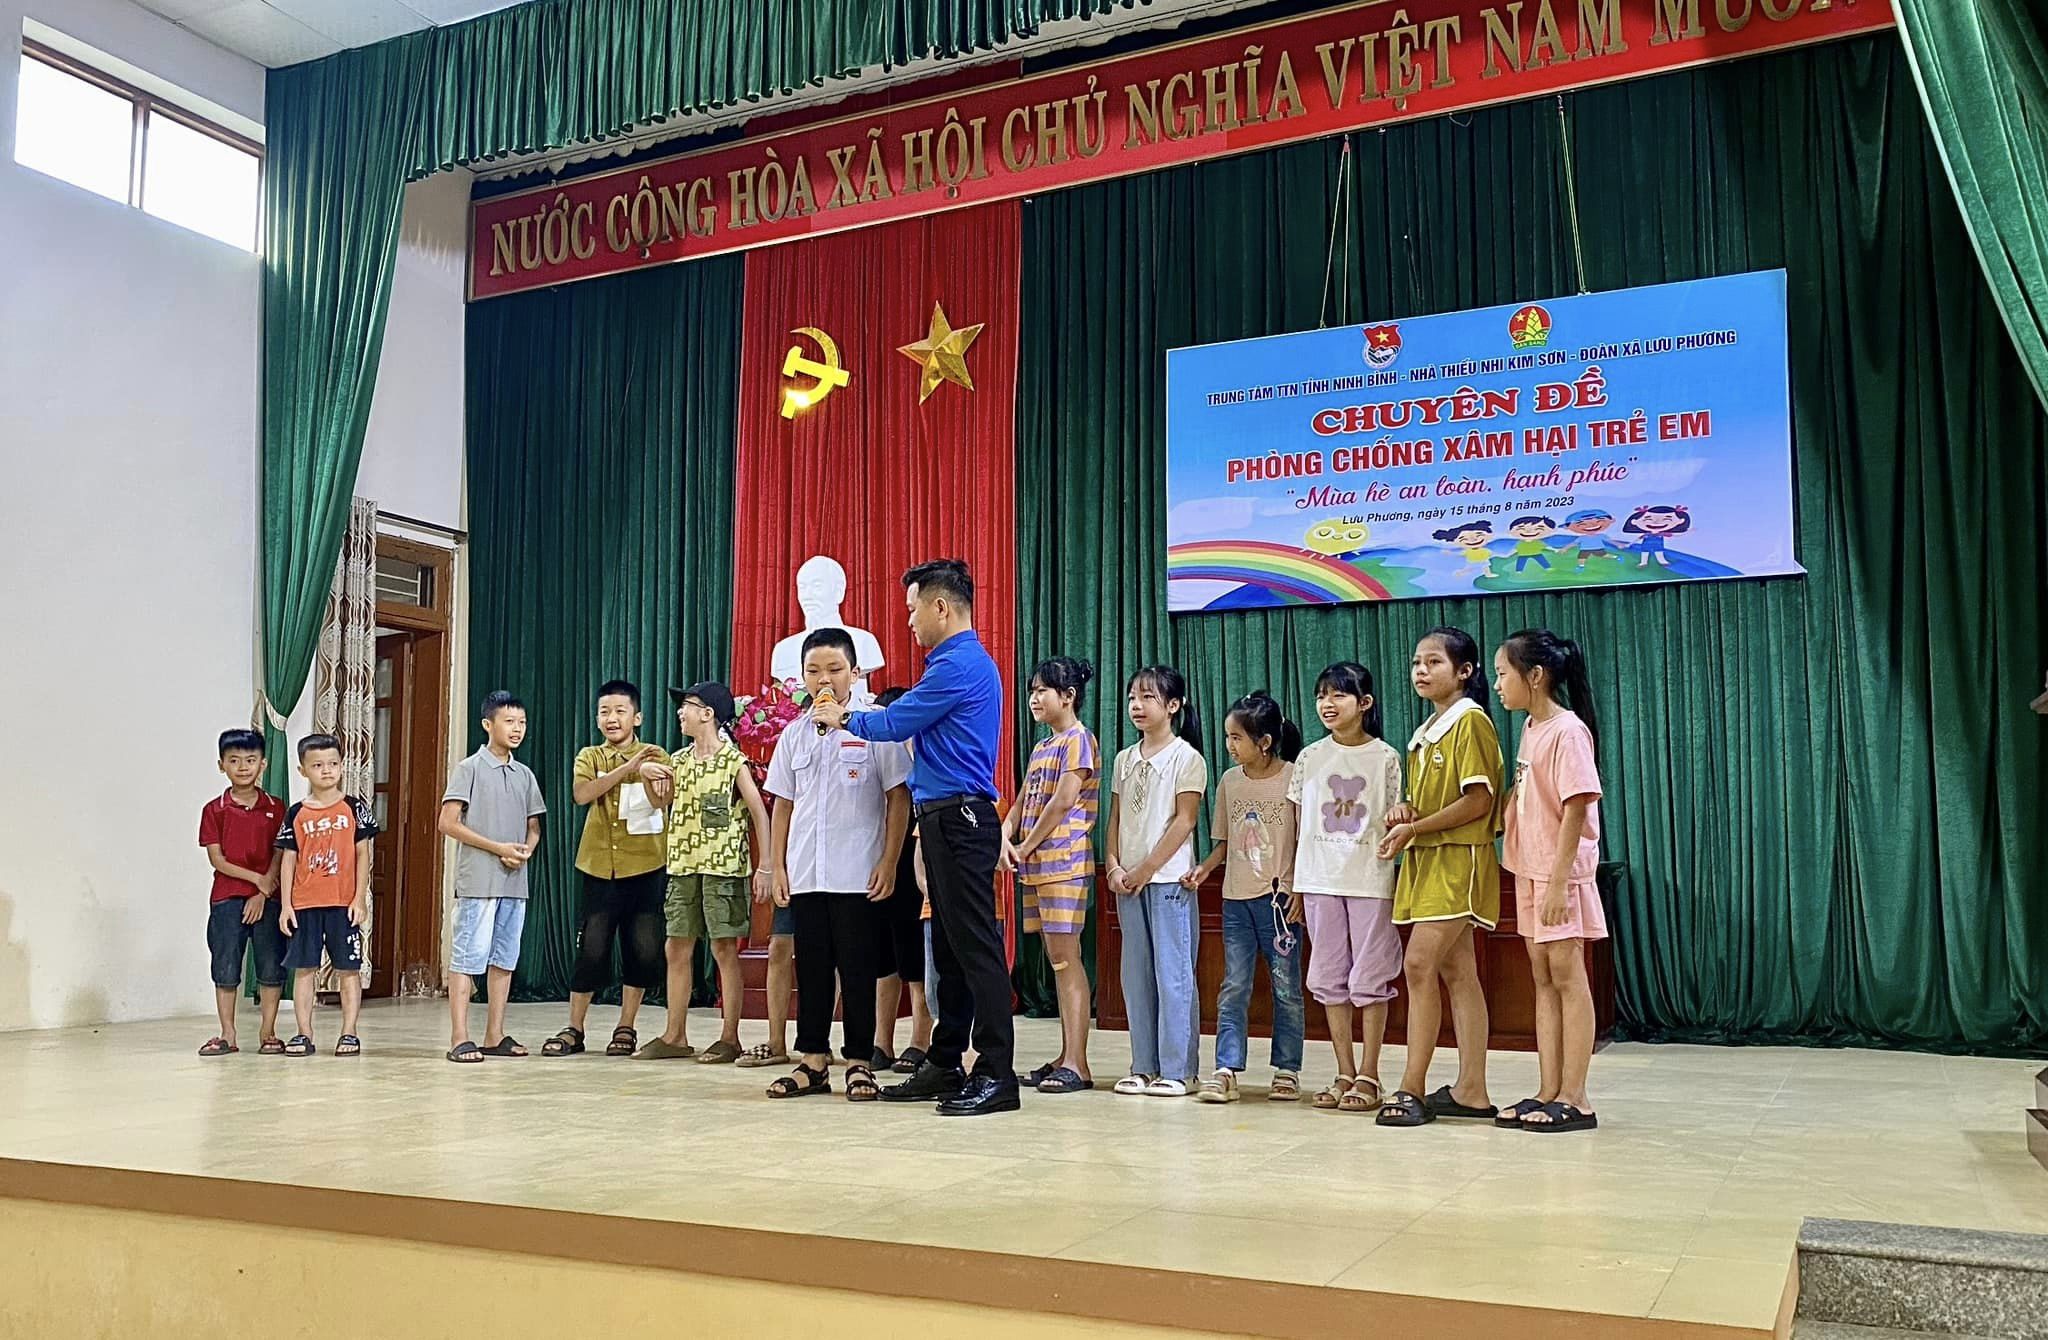 Nhà thiếu nhi Kim Sơn tổ chức sinh hoạt chuyên đề “Phòng chống xâm hại trẻ em” với thông điệp “Mùa hè an toàn, hạnh phúc”